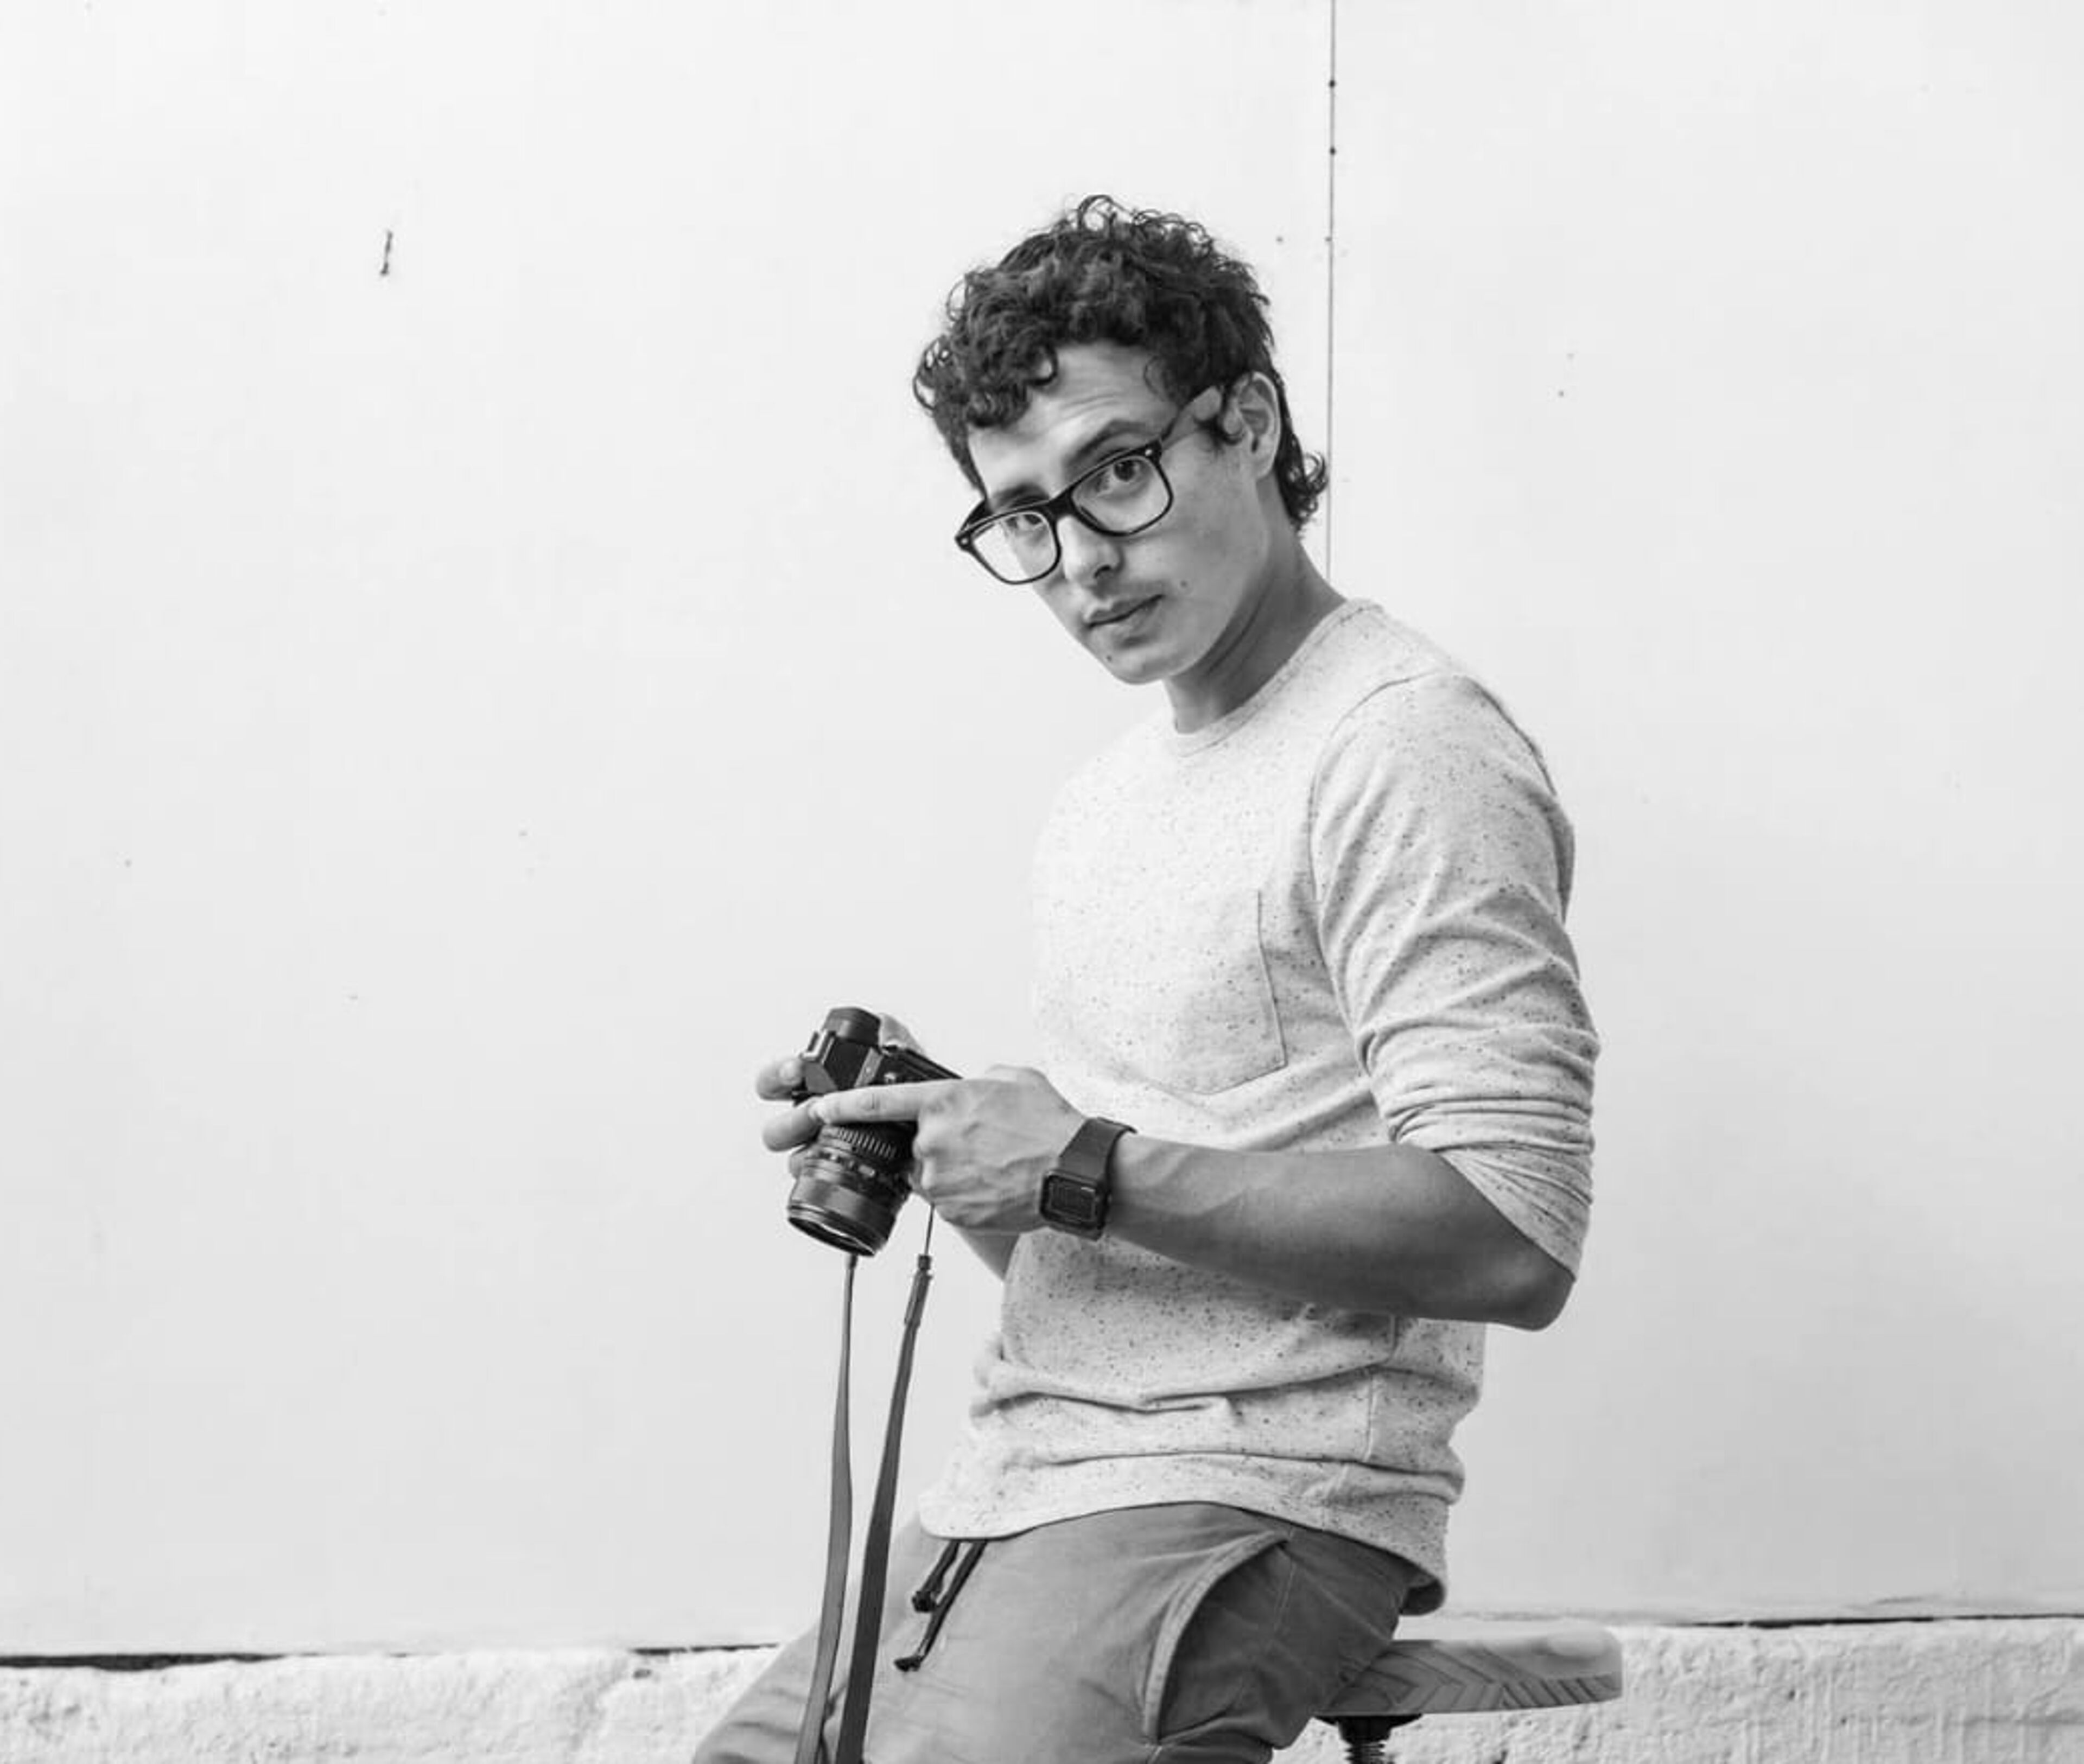 Un joven con pelo rizado y gafas se apoya en un taburete, sosteniendo una cámara, en una foto en blanco y negro.